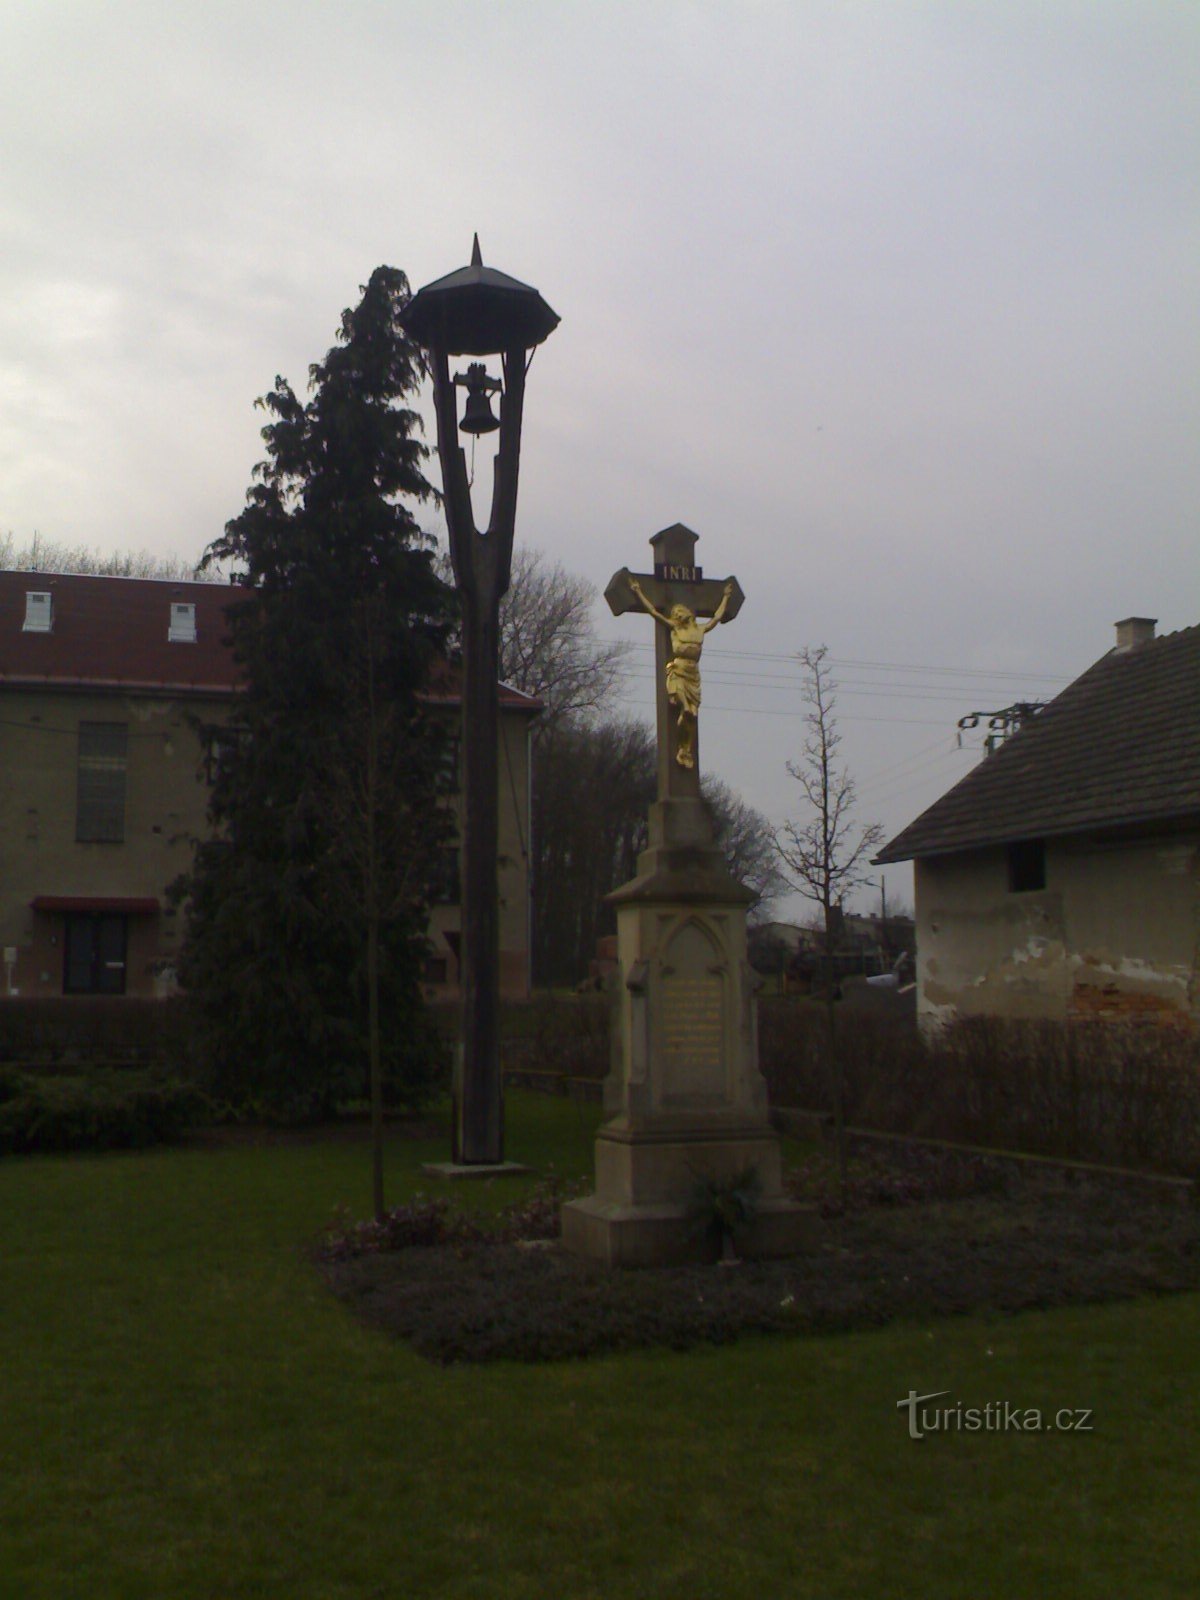 Jílovice - klockstapel och korsfästelsemonument